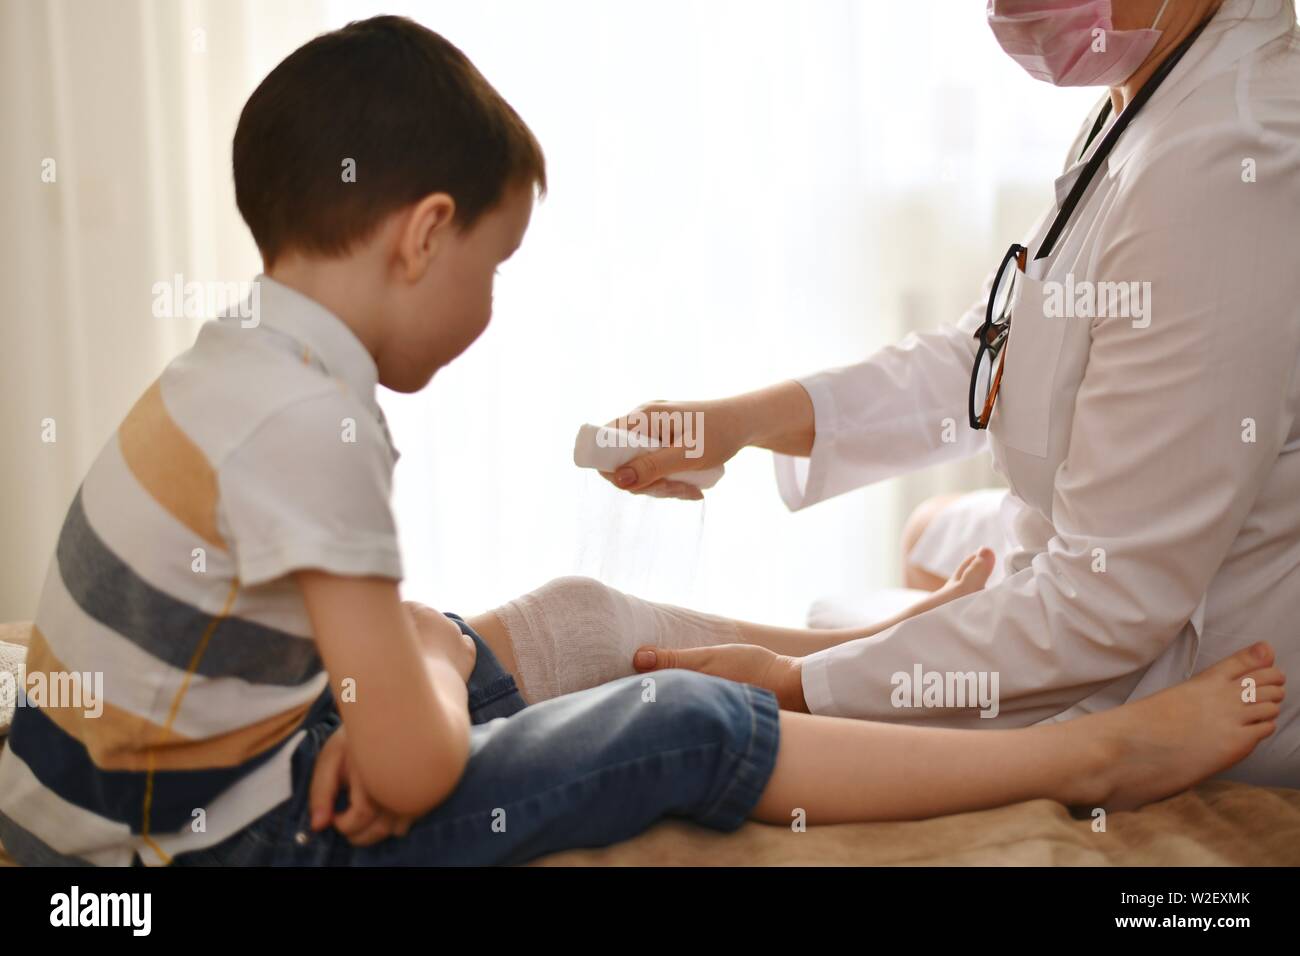 Un medico in una veste bianca bende il ginocchio di un bambino seduto di fronte a lei. Il ragazzo in attesa, piegato le sue braccia e orologi la scena. Foto Stock